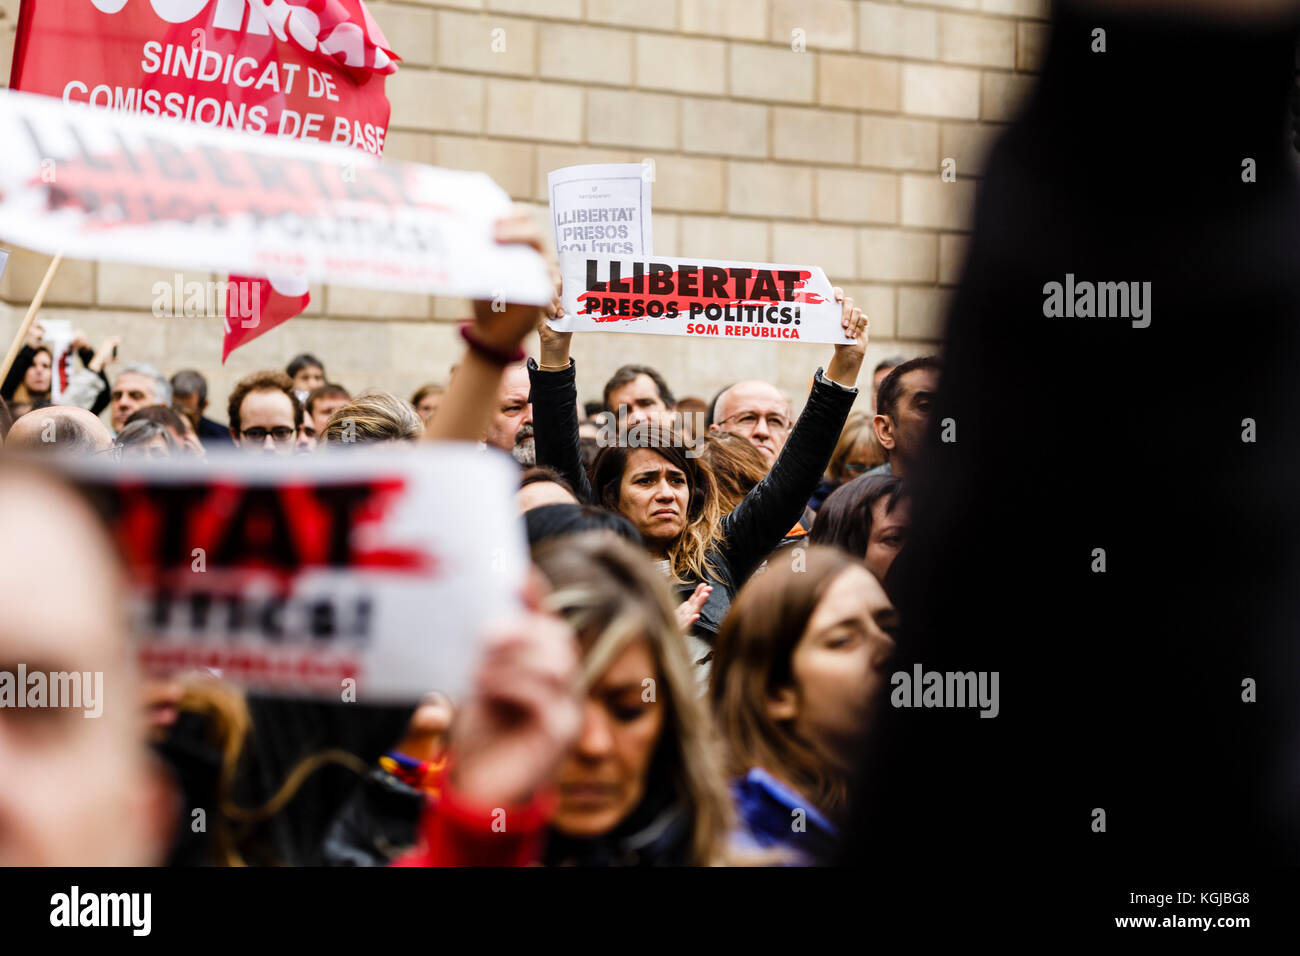 8. November 2017 - Barcelona, Barcelona, Spanien - Demonstranten, die während der Konzentration auf dem Sant Jaume's Square, Barcelona für die Freiheit politischer Gefangener aufriefen Quelle: Joan Gosa Badia/Alamy Stockfoto